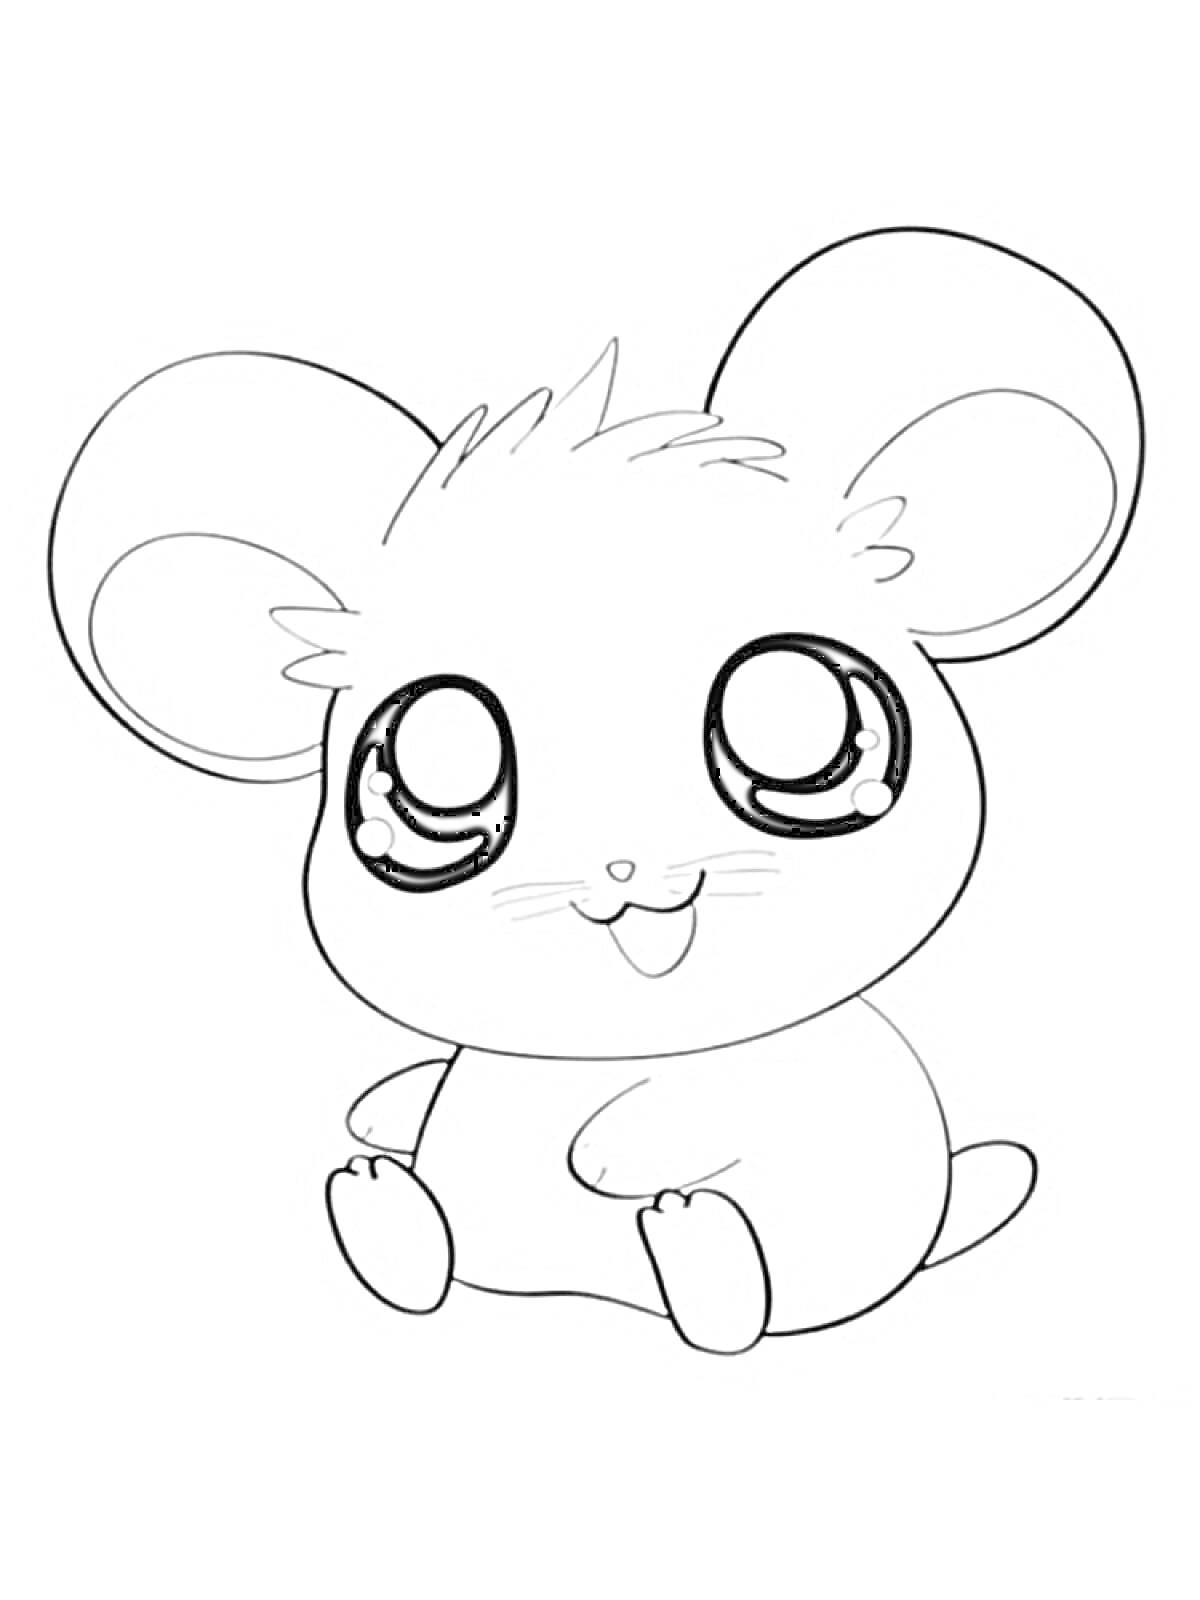 Раскраска Маленькая мультяшная мышка с большими глазами